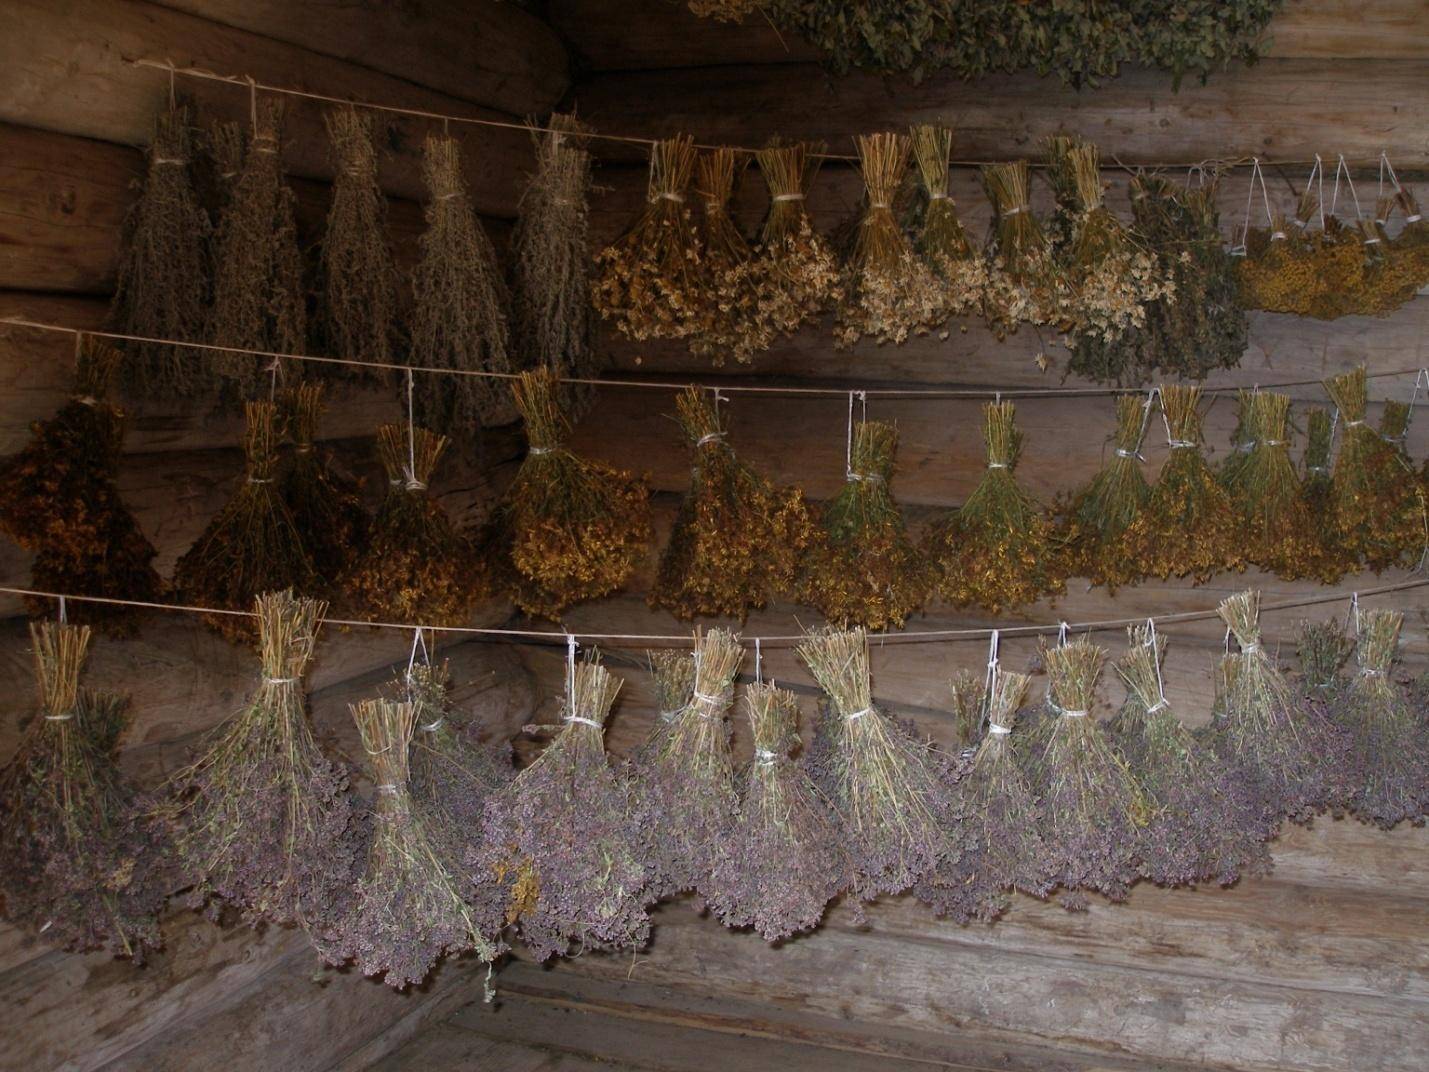 Полезные травы для чая: как правильно собрать и заготовить